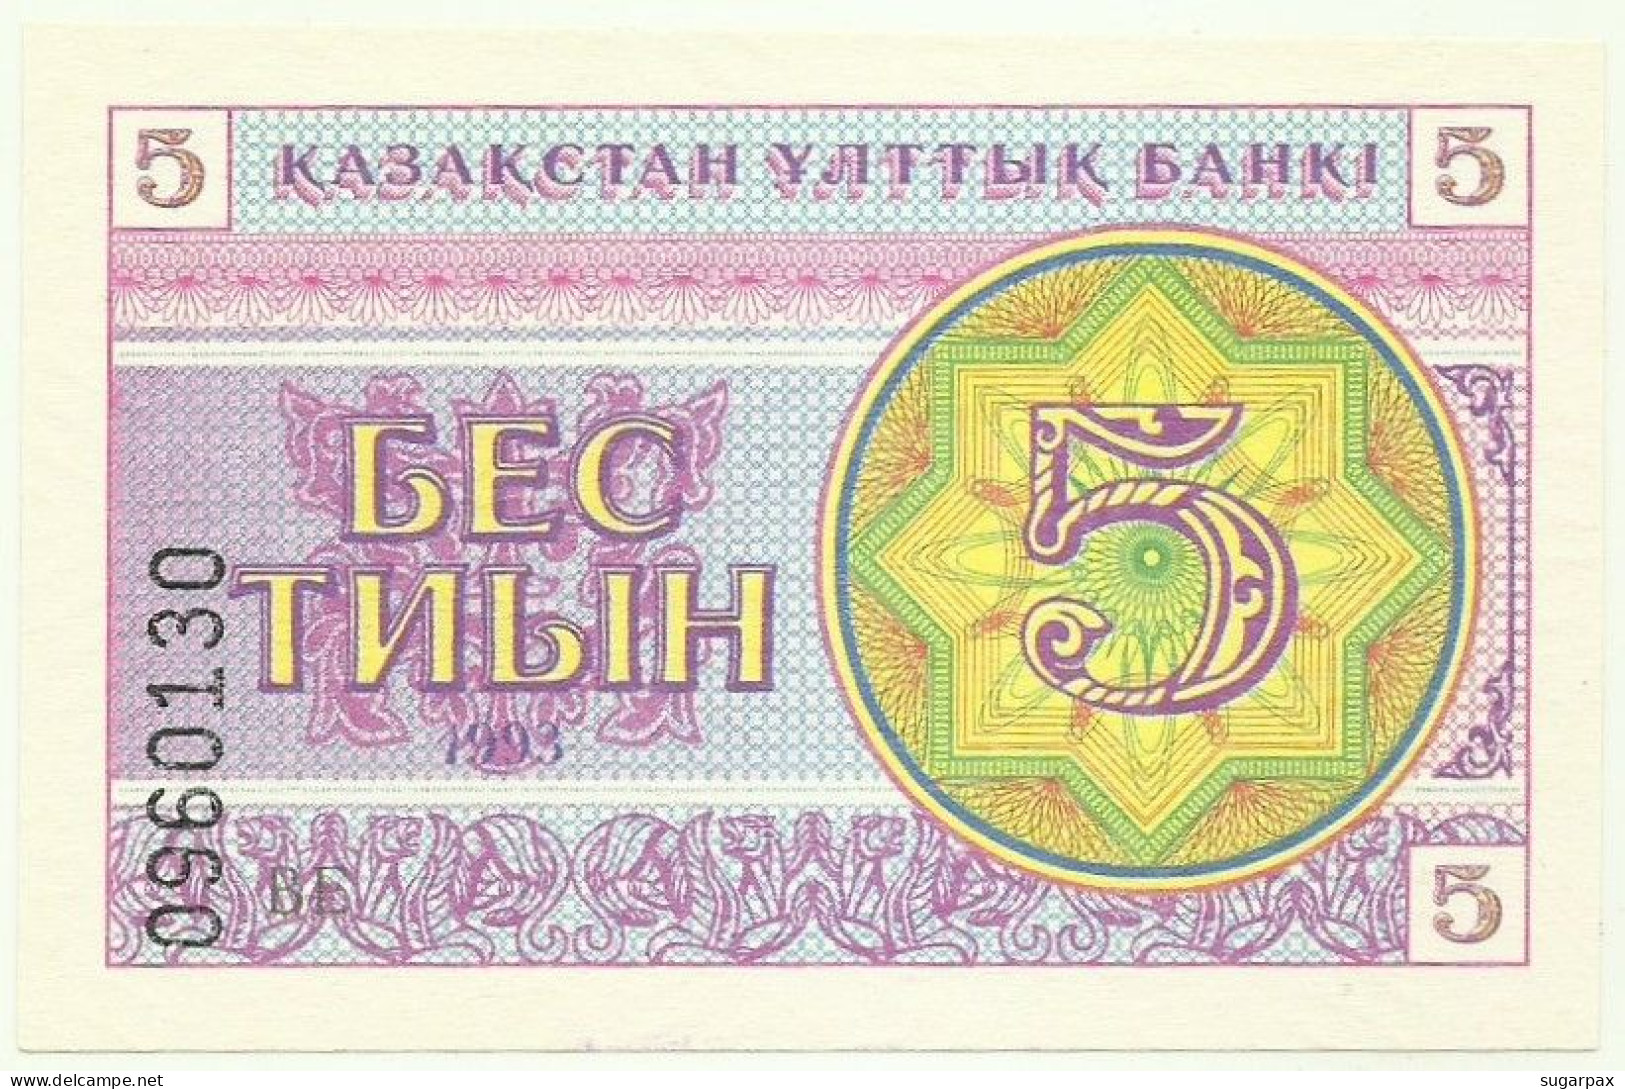 KAZAKHSTAN - 5 Tyin 1993 - Pick 3.a - Unc. - LOW Serial # Position - Wmk Snowflake Pattern - Kazakistan